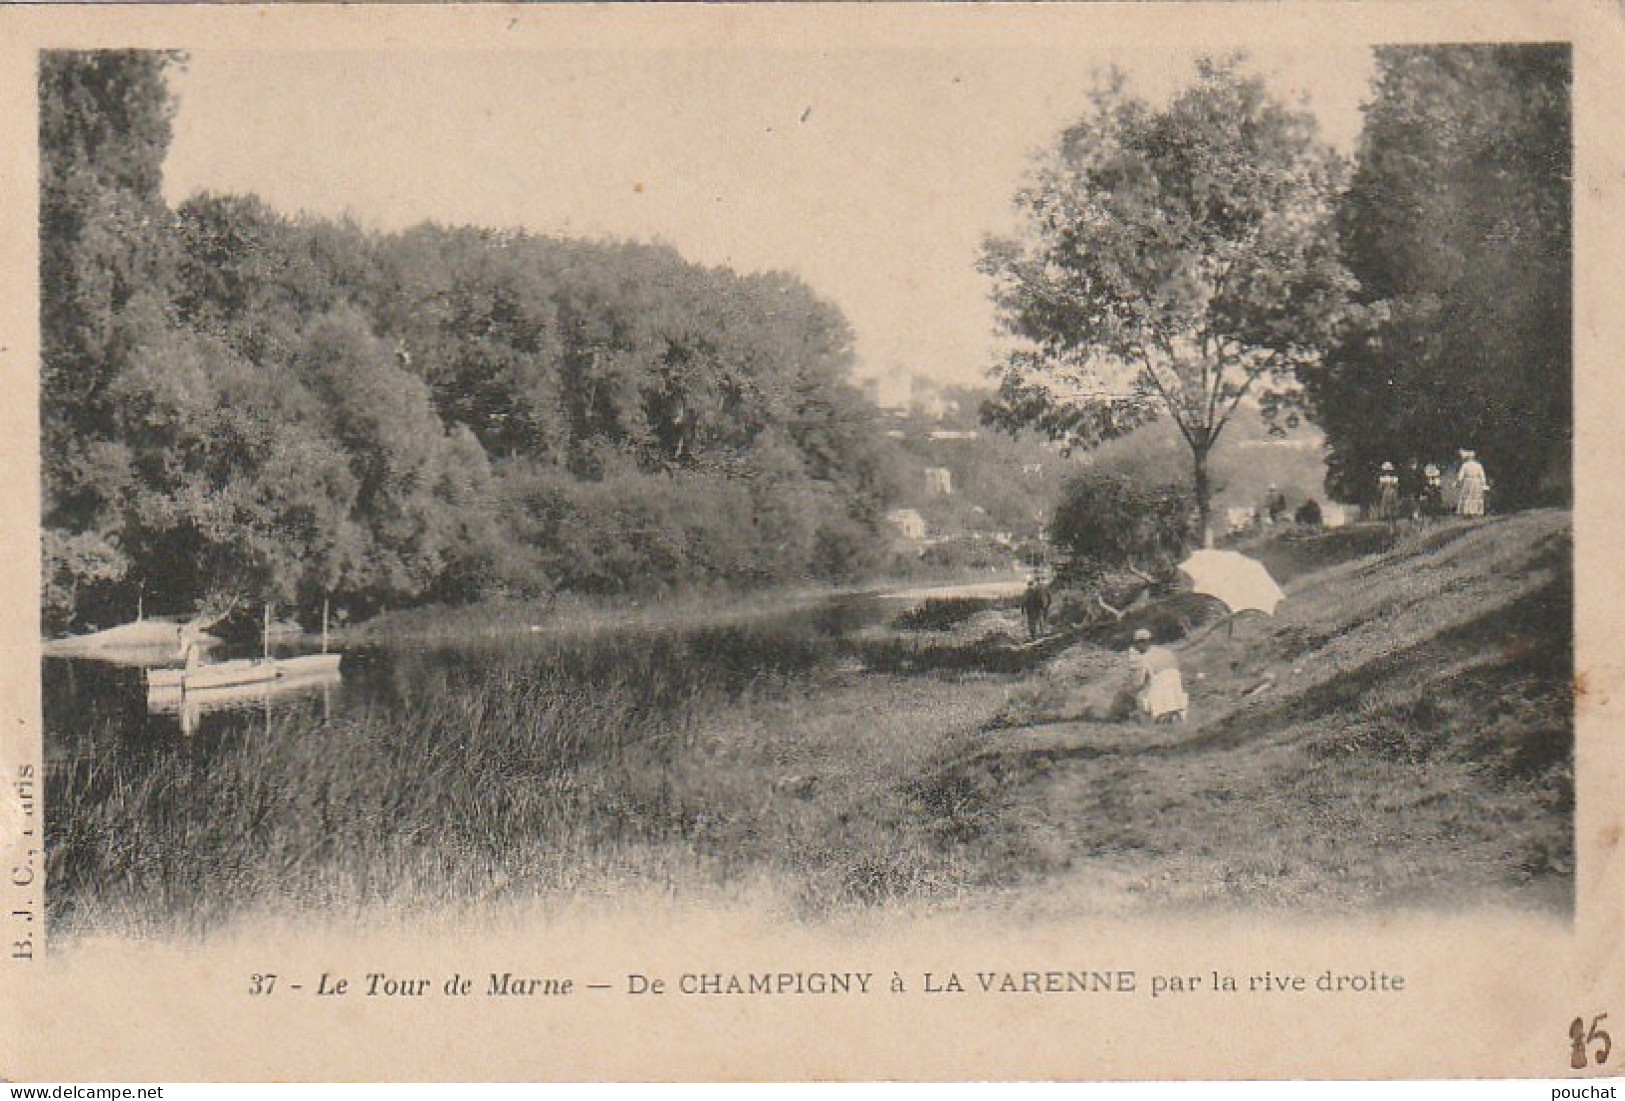 MO 8-(94) LE TOUR DE MARNE - DE CHAMPIGNY A LA VARENNE PAR LA RIVE DROITE - CANOTEUR , PROMENEURS - ANIMATION - 2 SCANS - Champigny Sur Marne